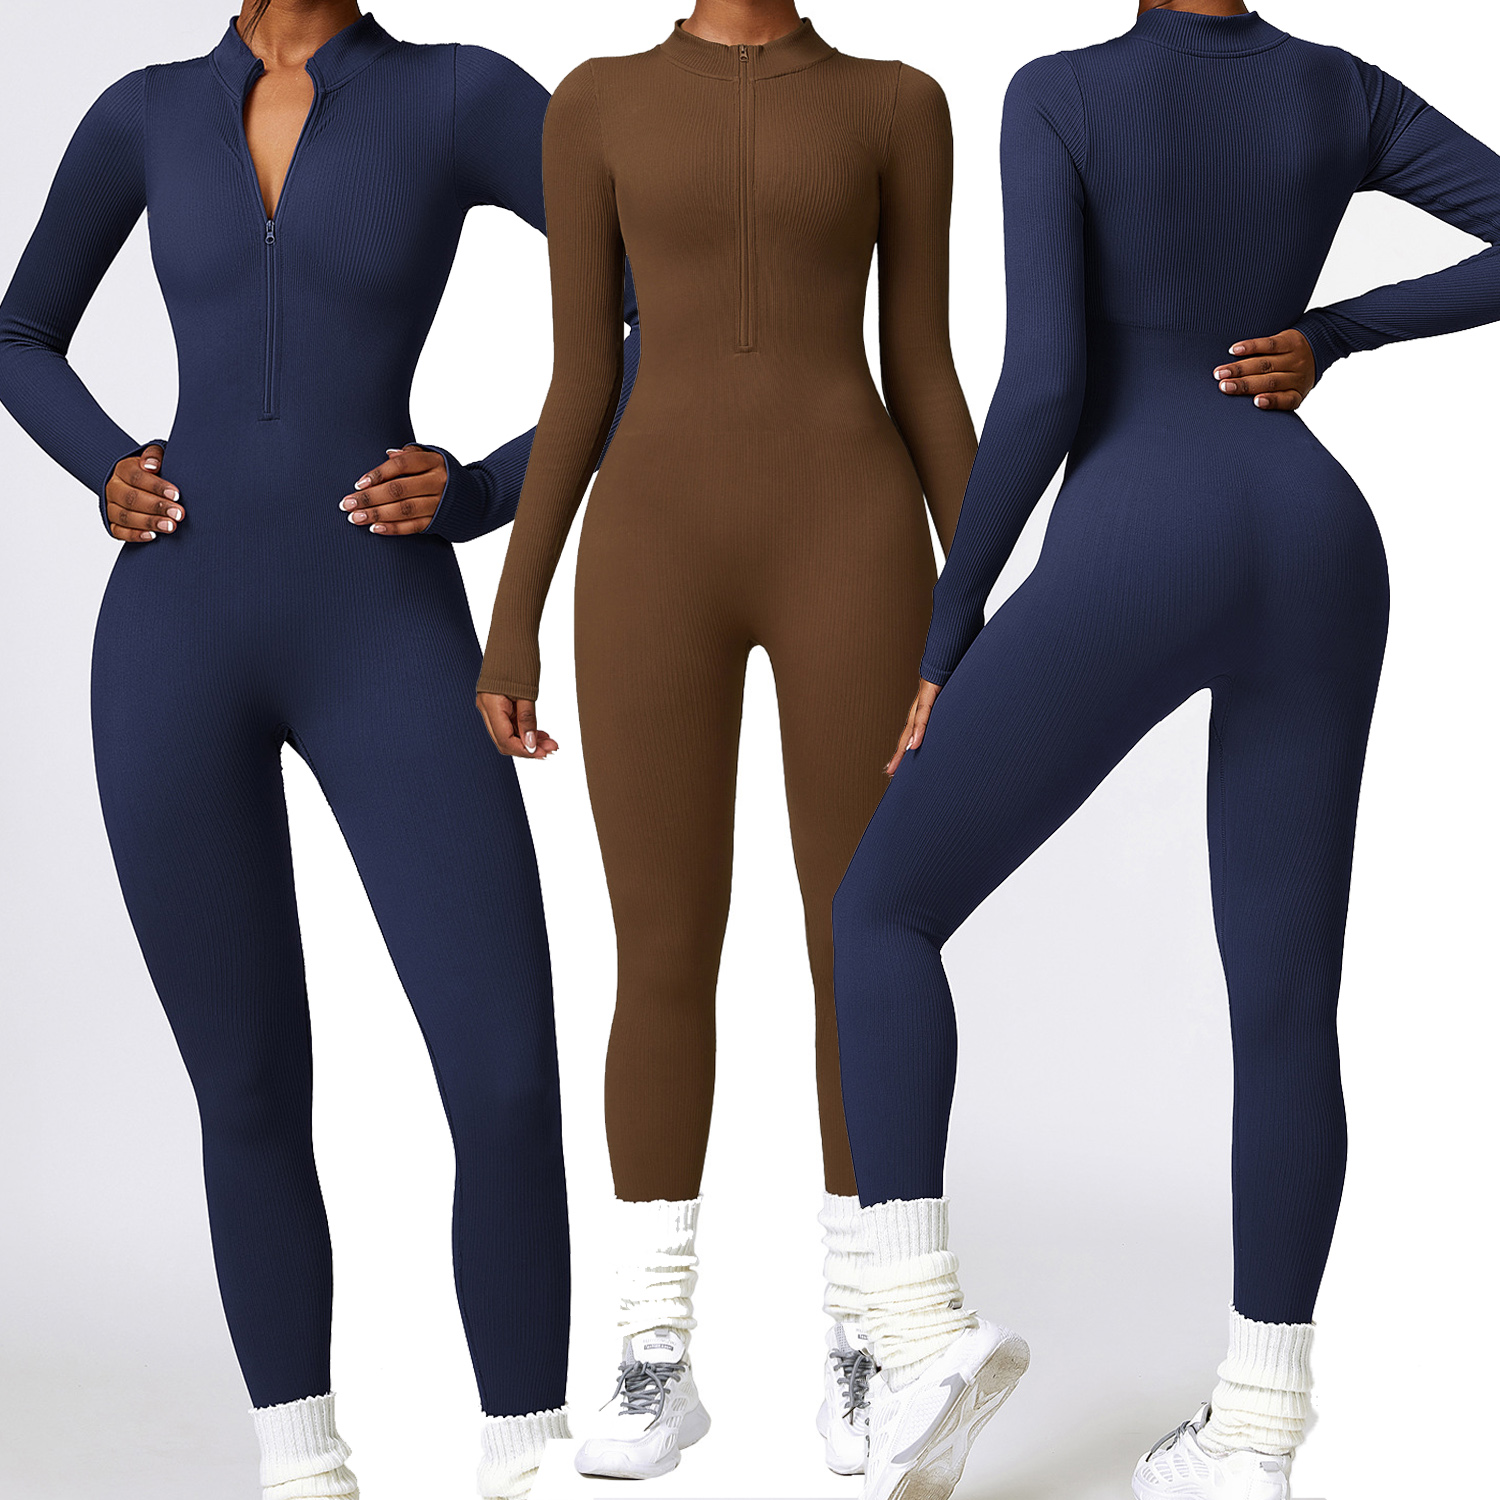 Nouveau ensemble de yoga sans couture vêtements de sport taille haute leggings de gymnastique costume soutien-gorge de sport costumes de sport cravate teinture costume de yoga